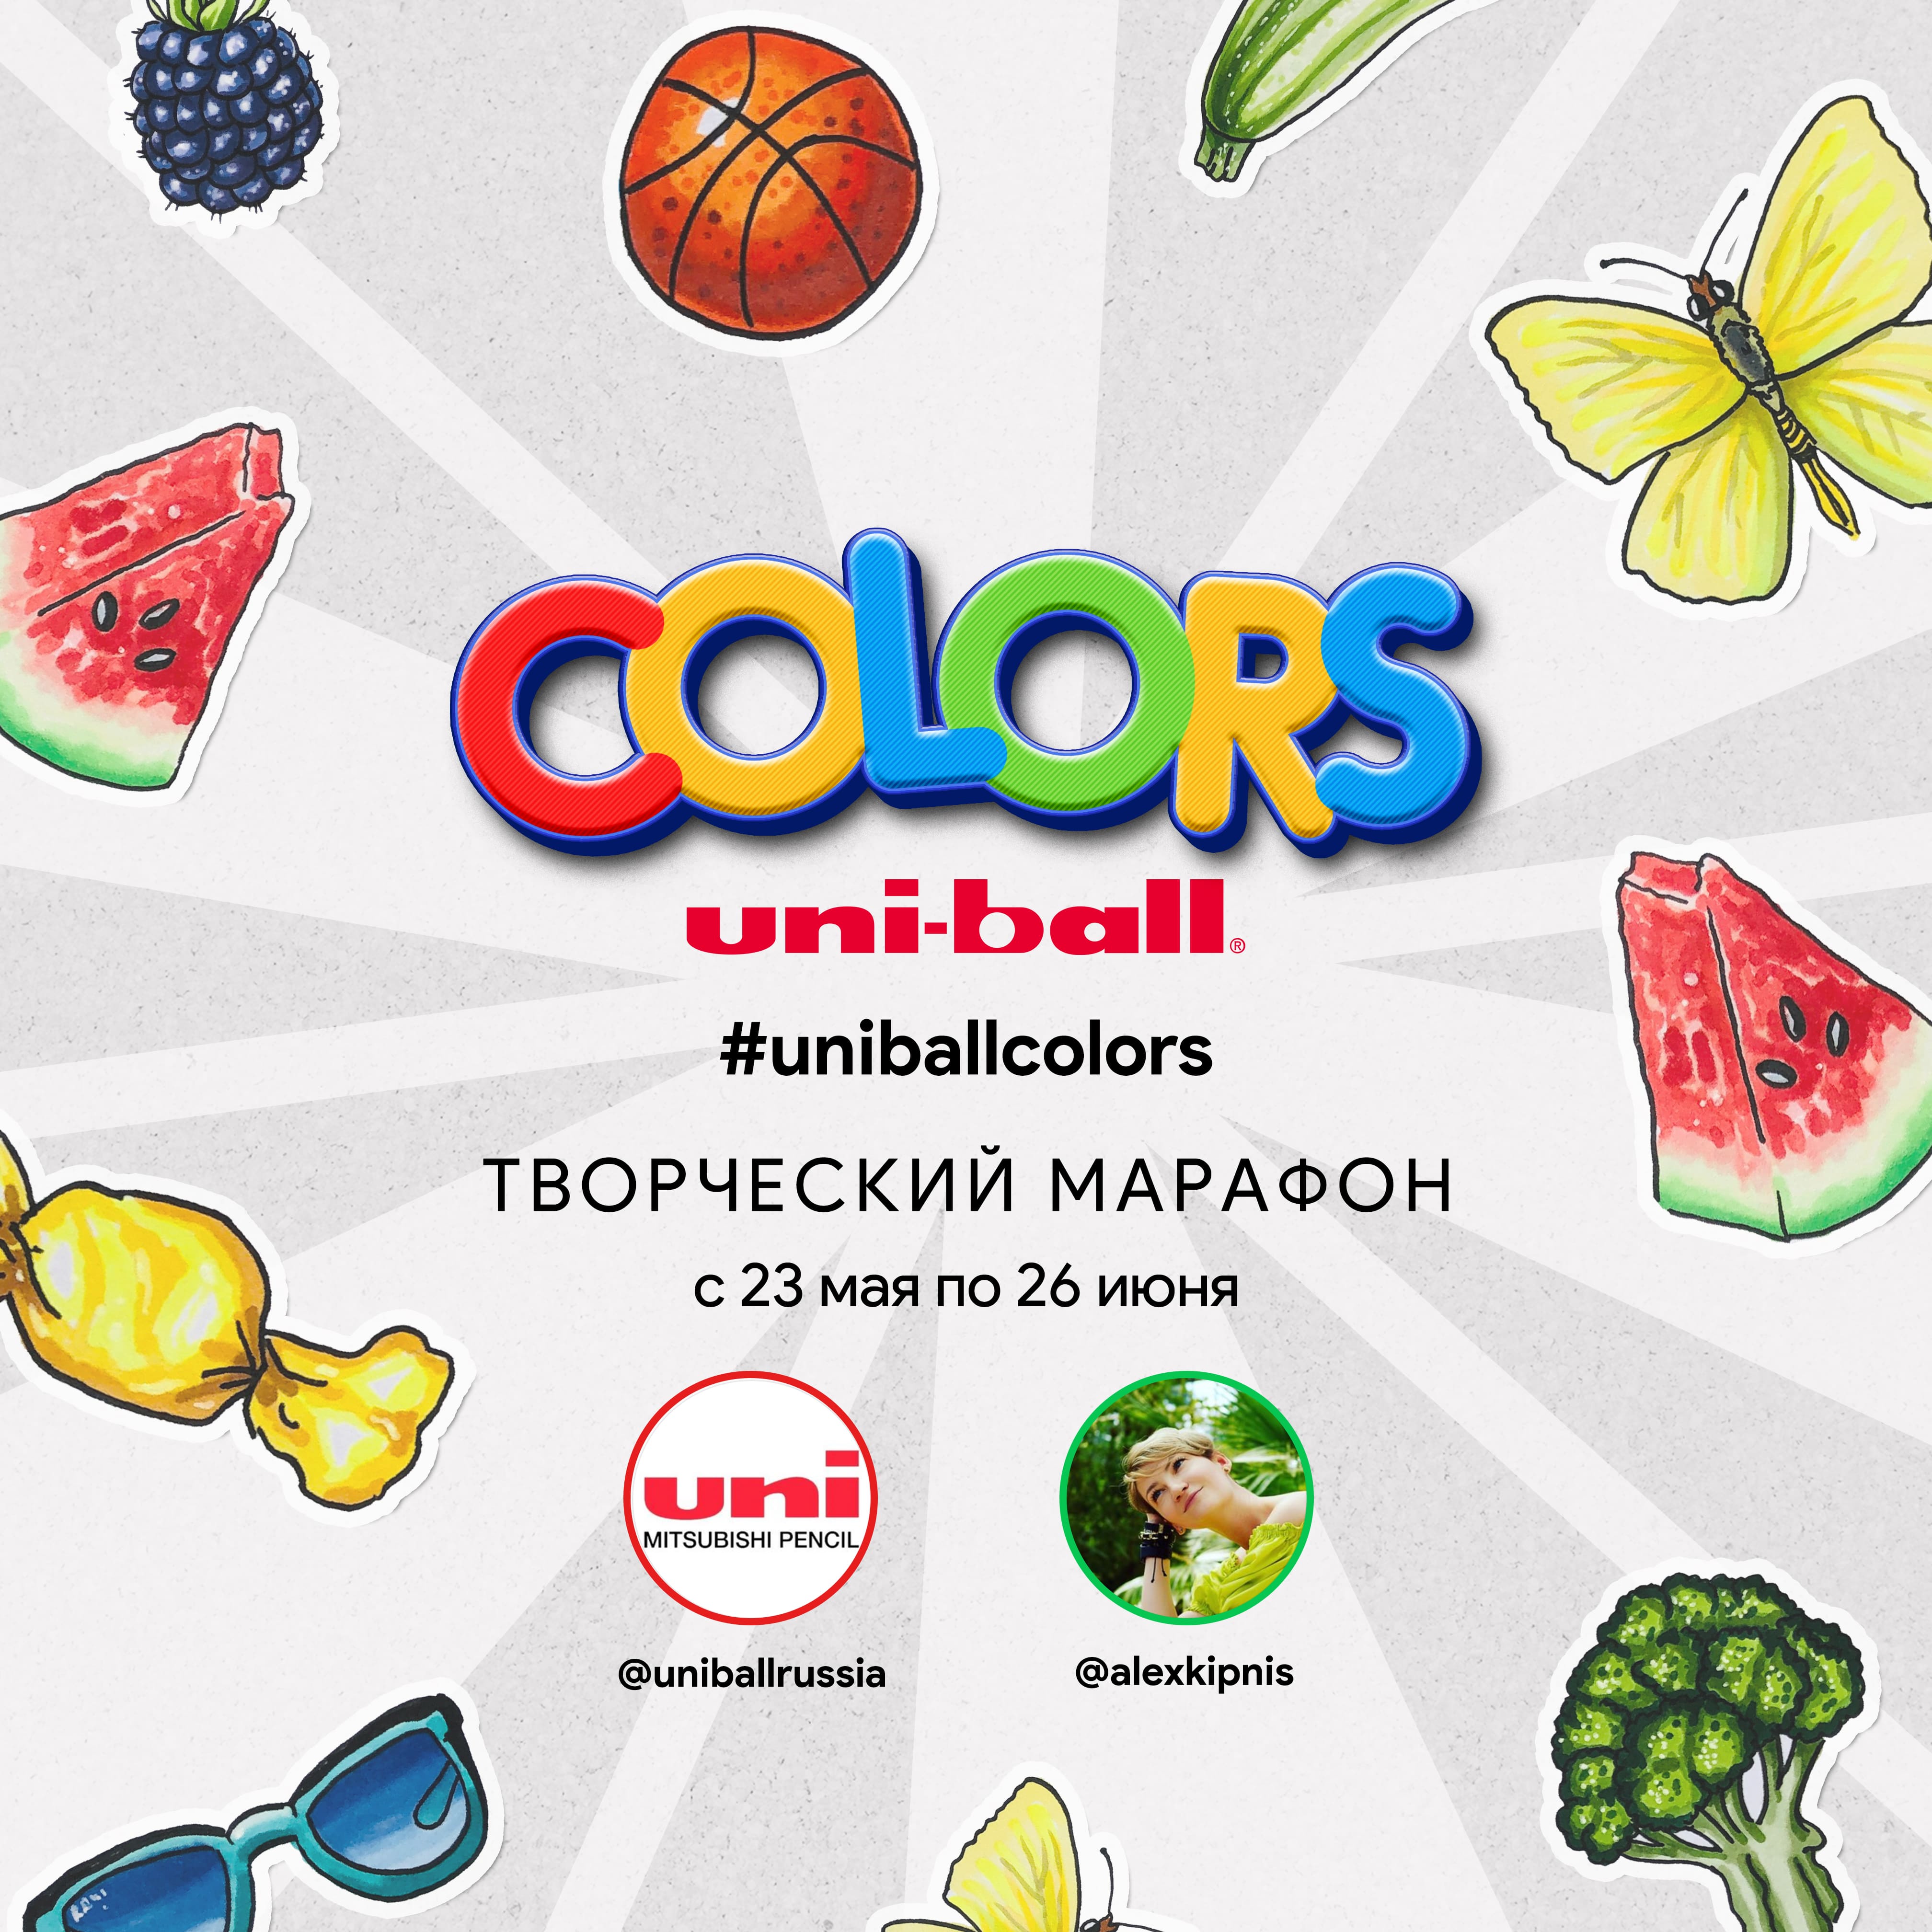 Творческий марафон Uniball Colors